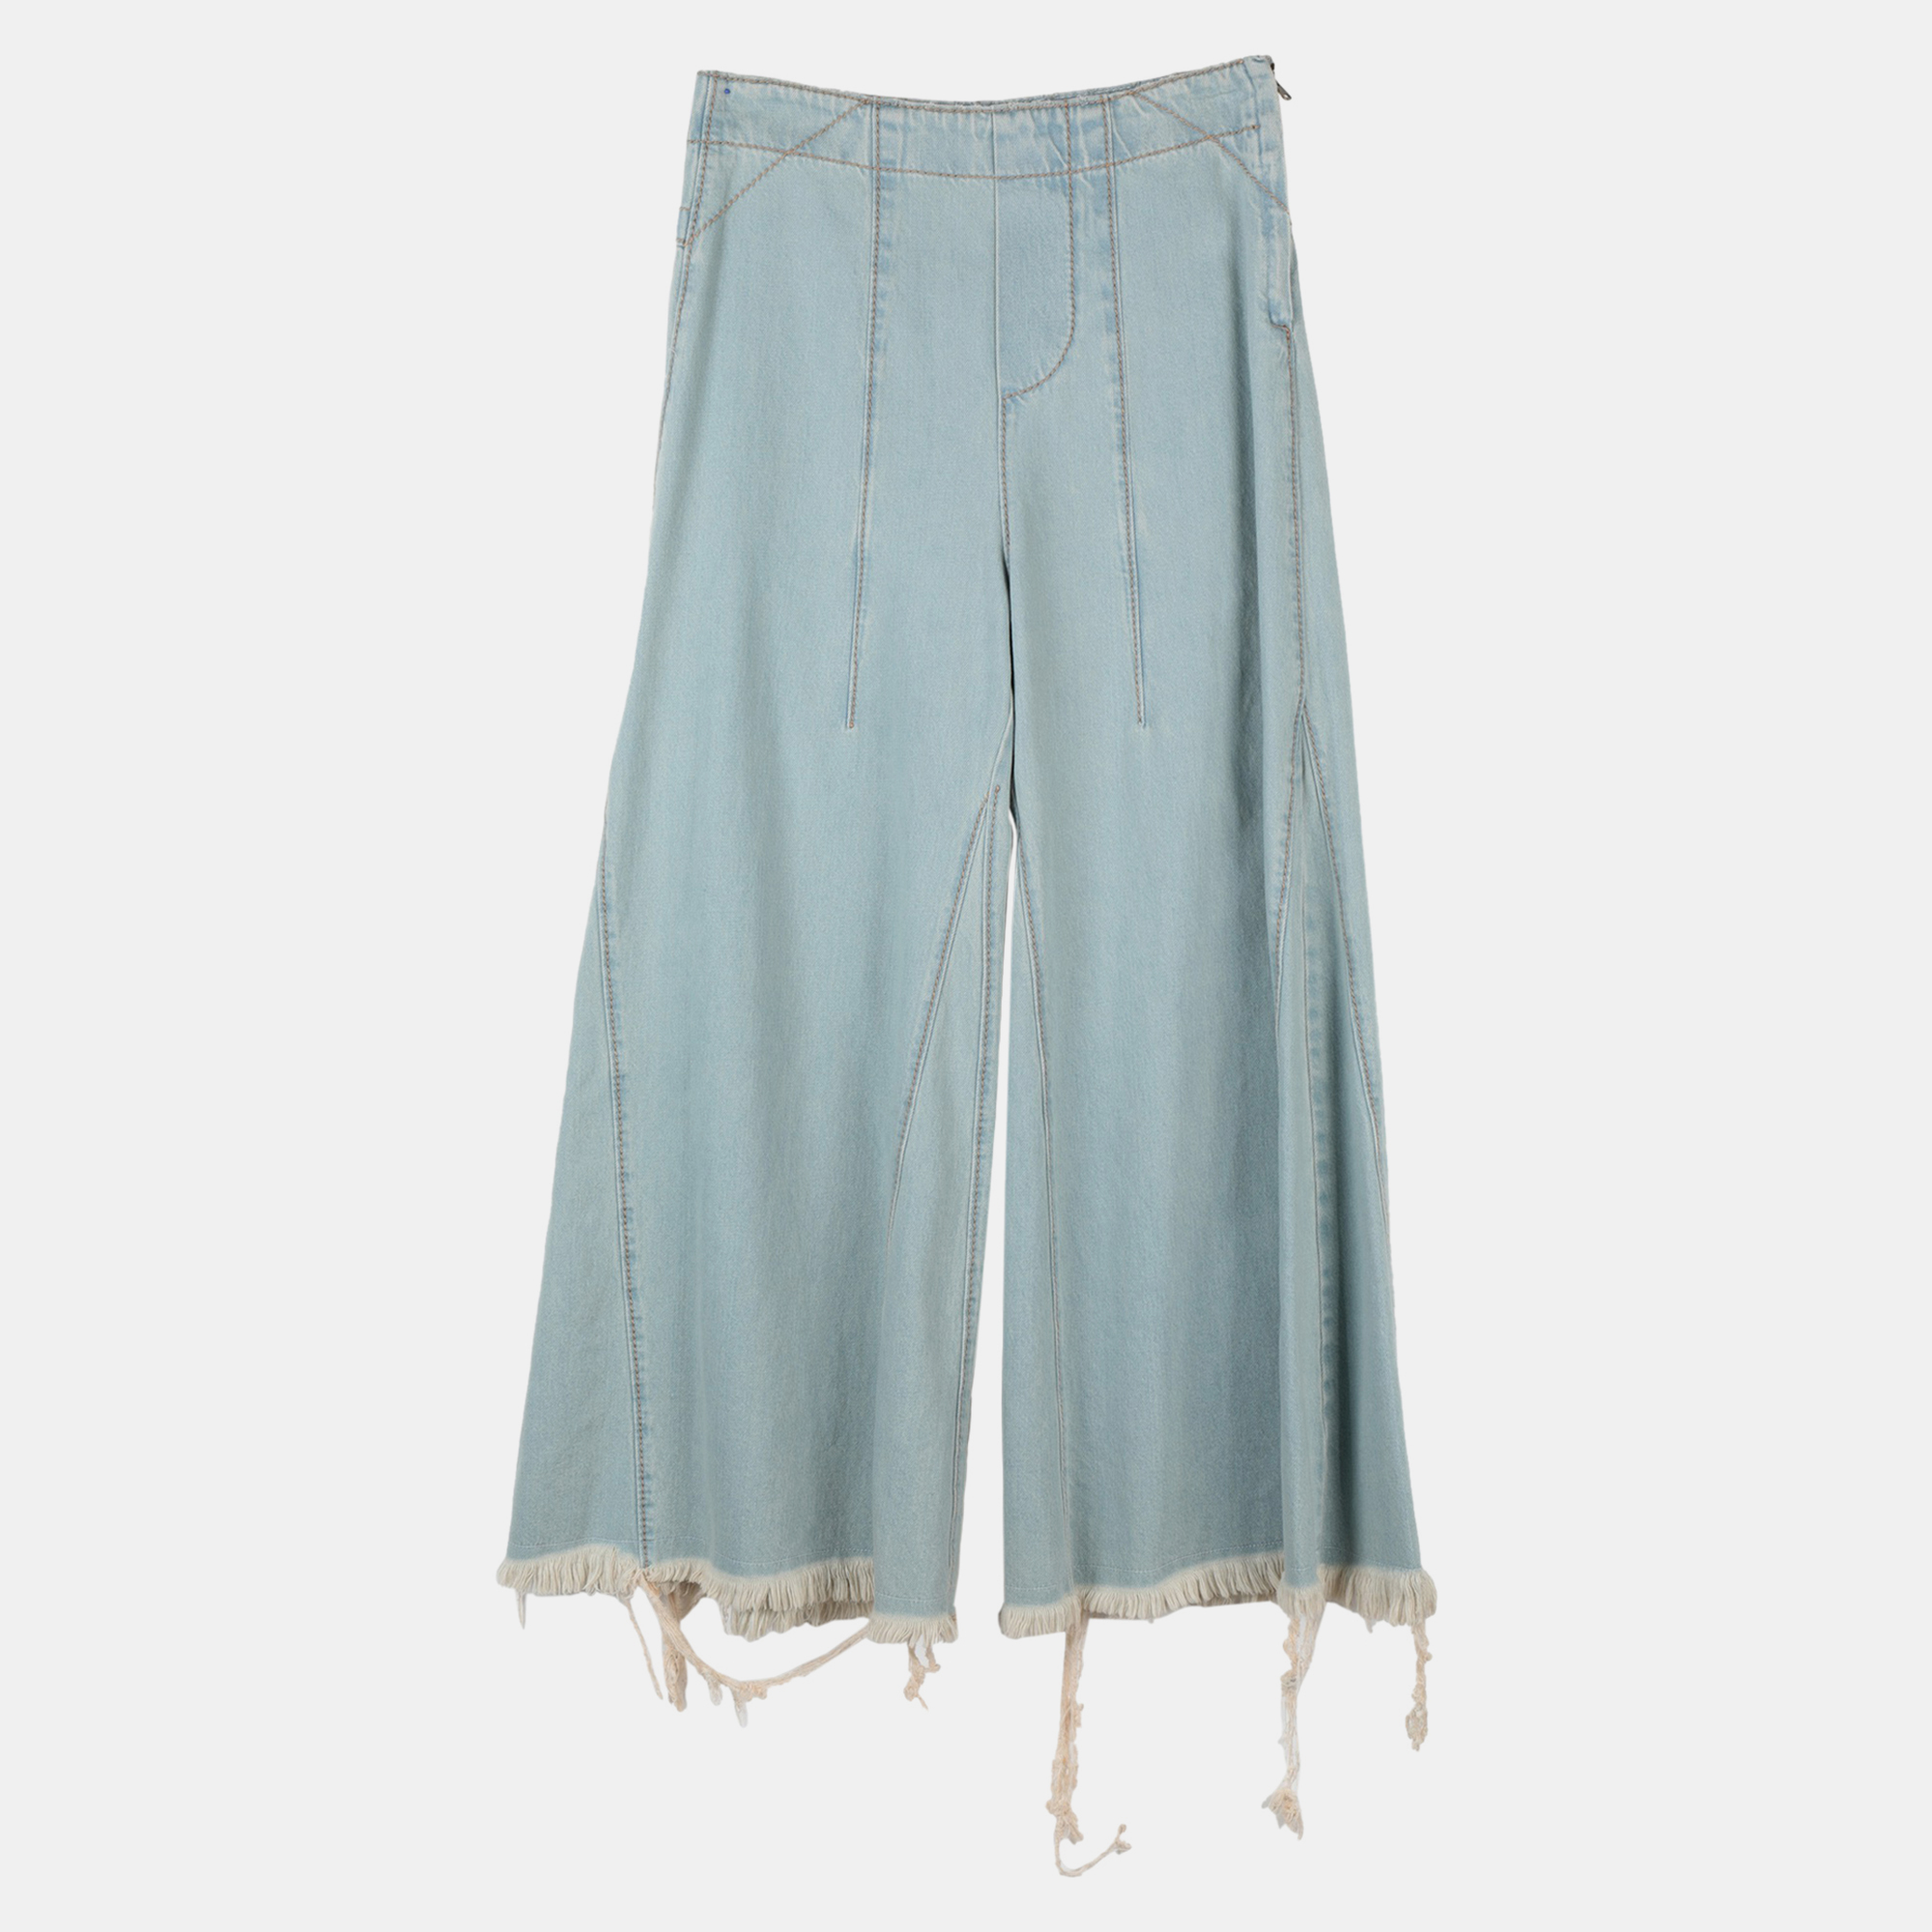 Chloe Light Blue Denim Fringed Flared Trousers XS (FR 34)